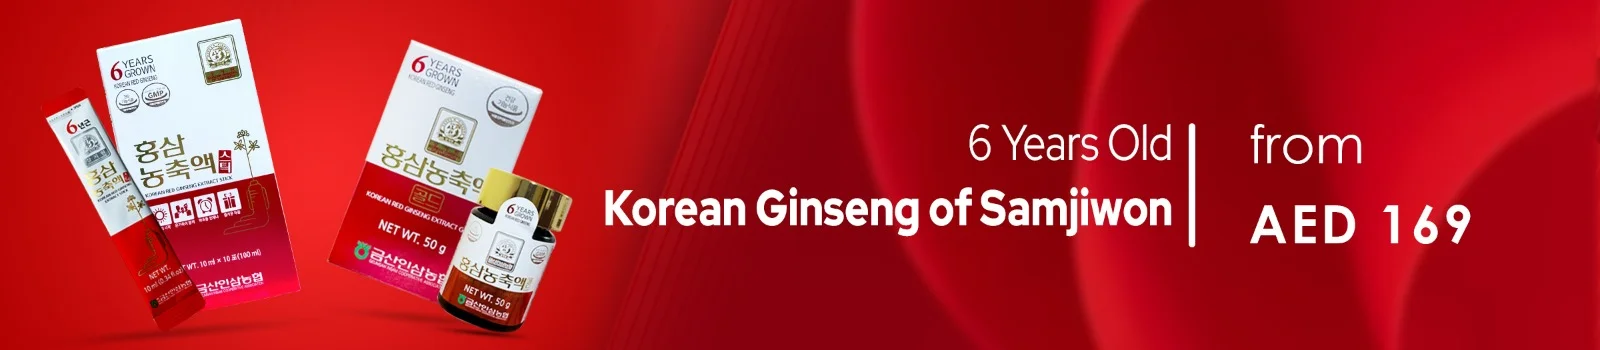 Korean Ginseng Samjiwon Banner